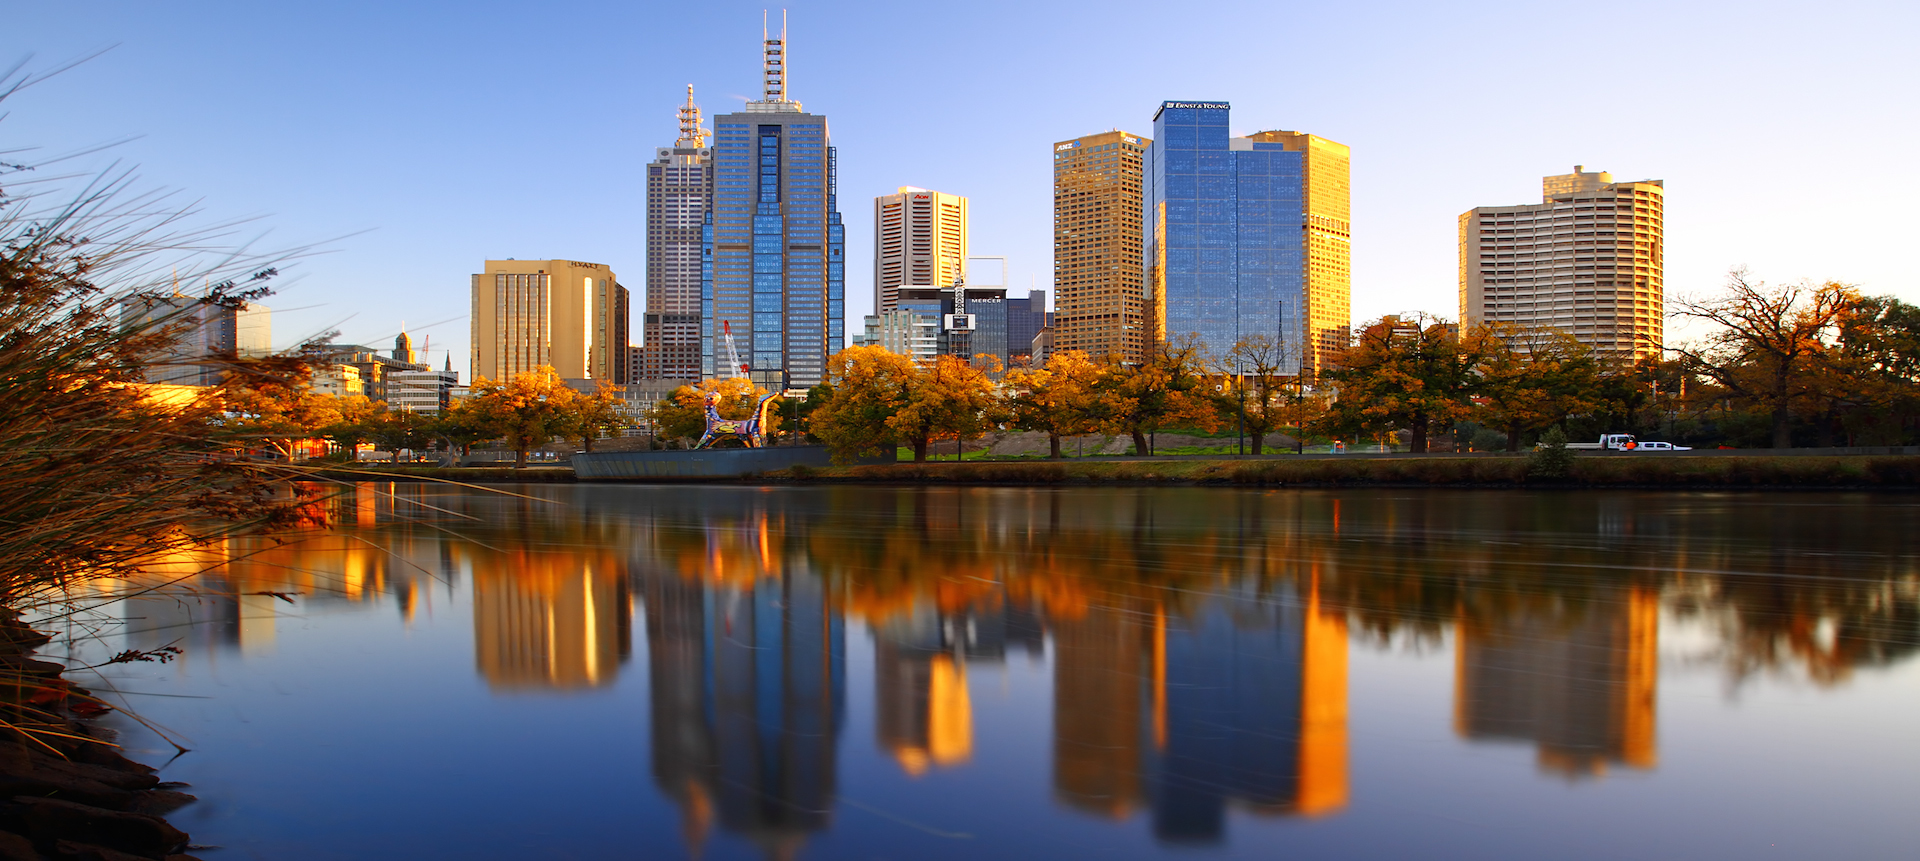 PIKM 2015 in Melbourne, October 2015